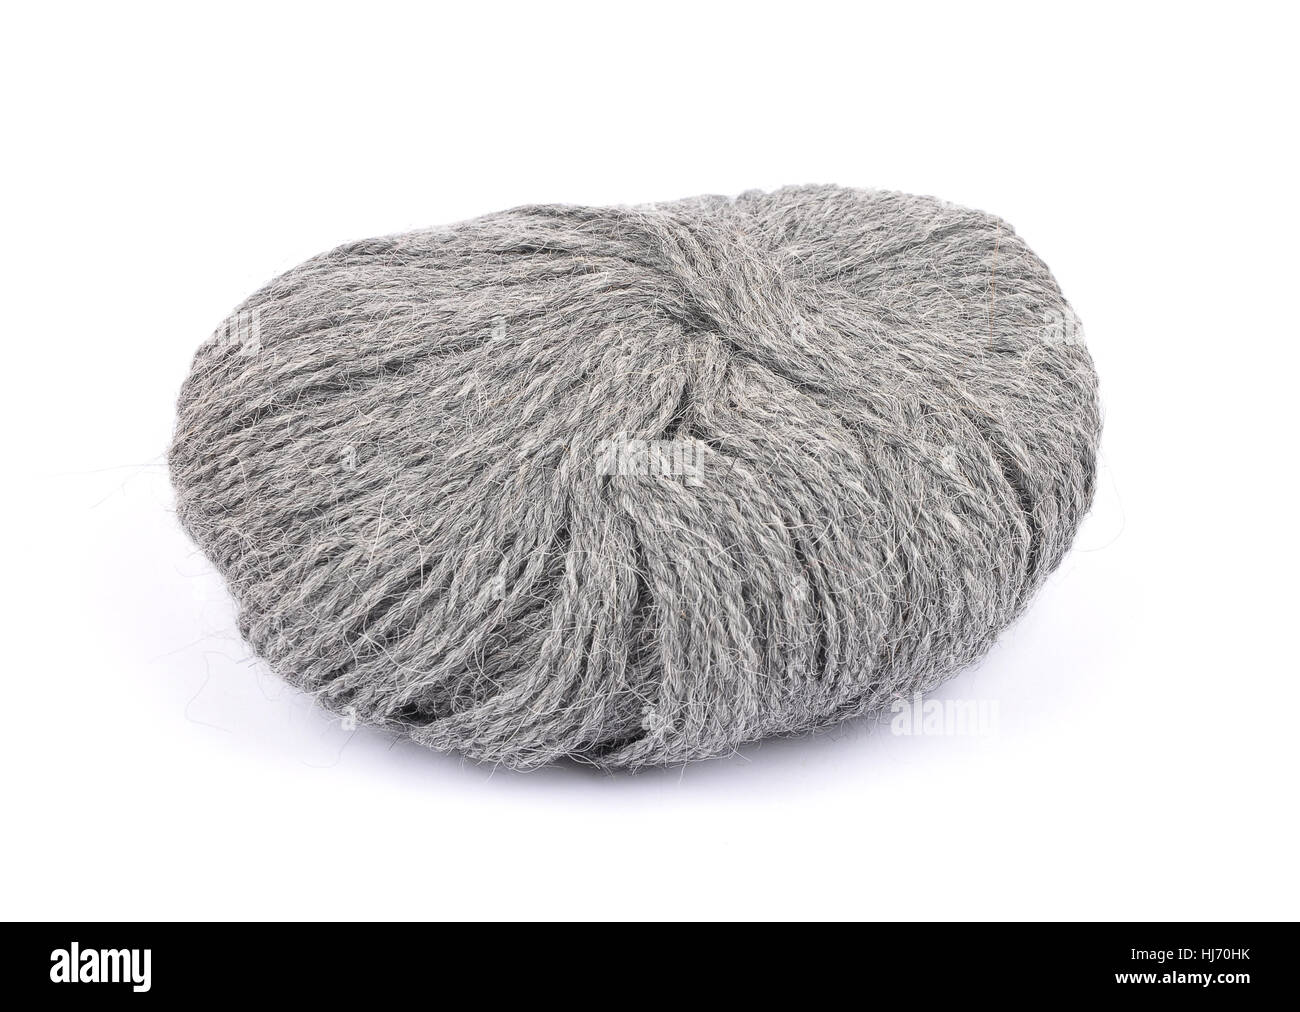 optional, wool, knit, handicraft, yarn, knitting, ball of wool, grey, gray, Stock Photo